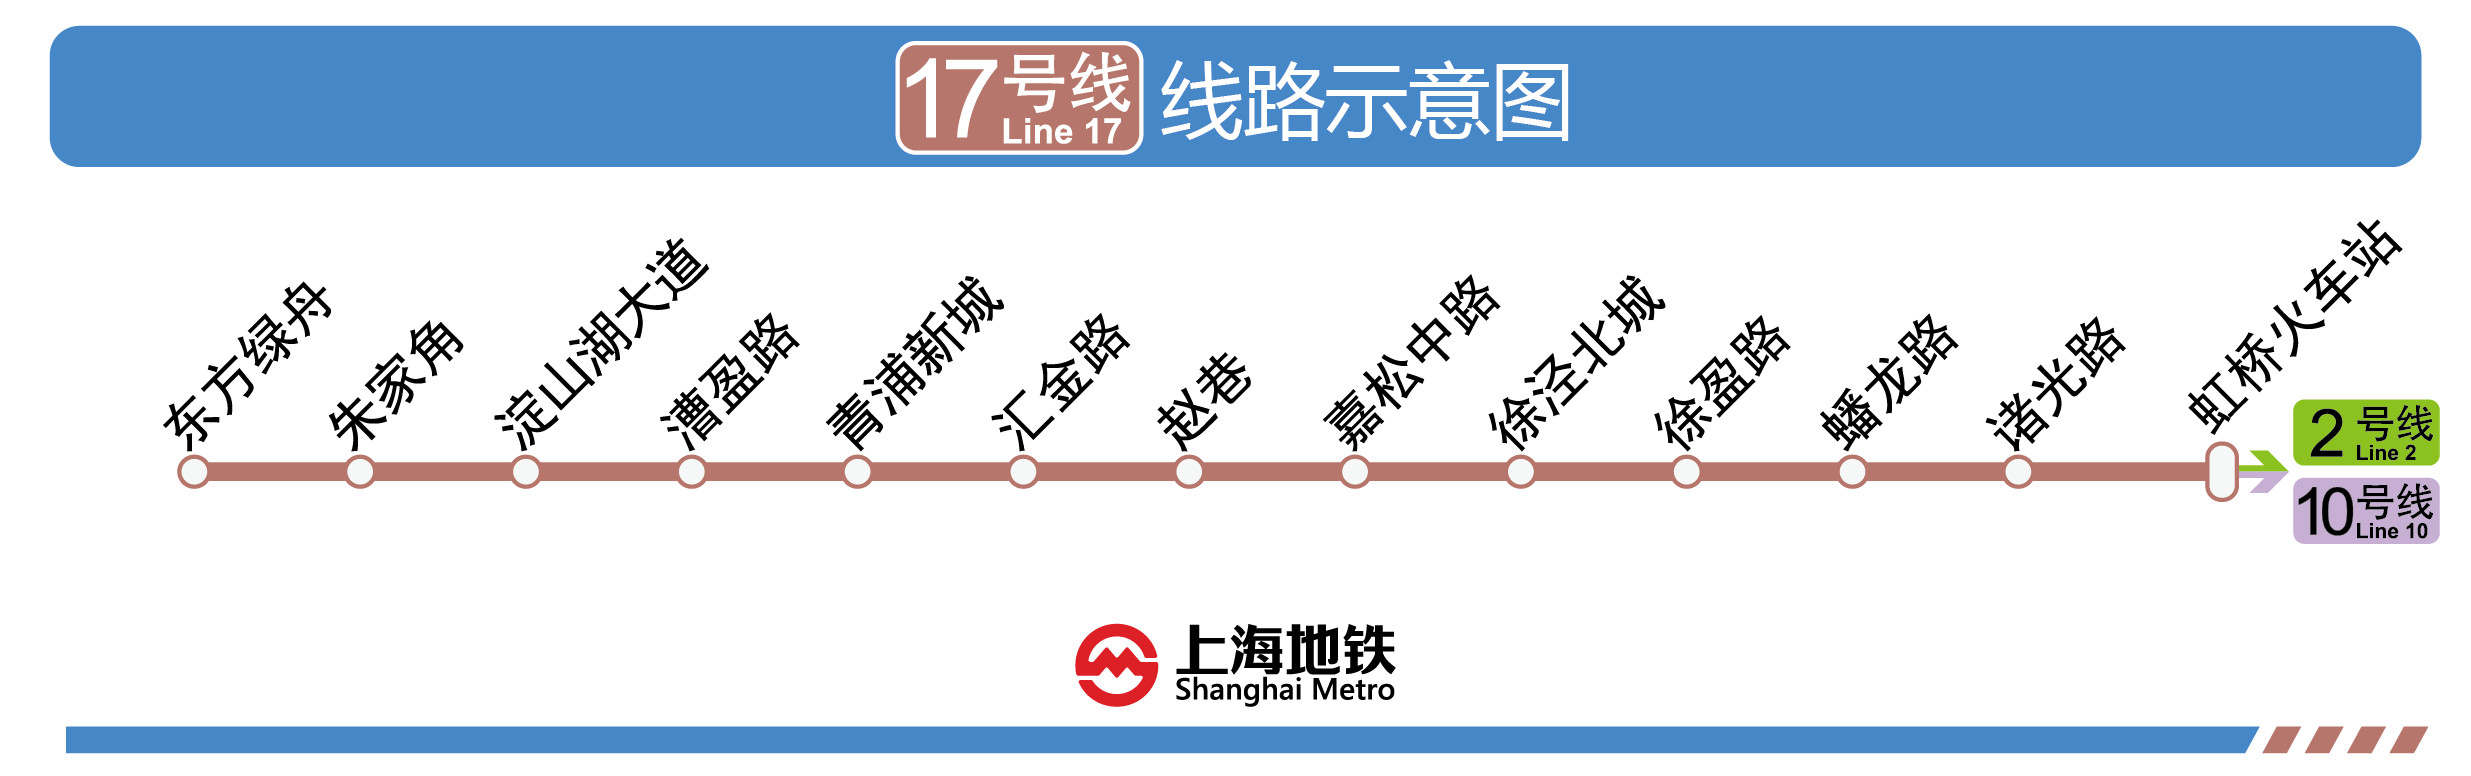 上海捷運17號線運行線路圖